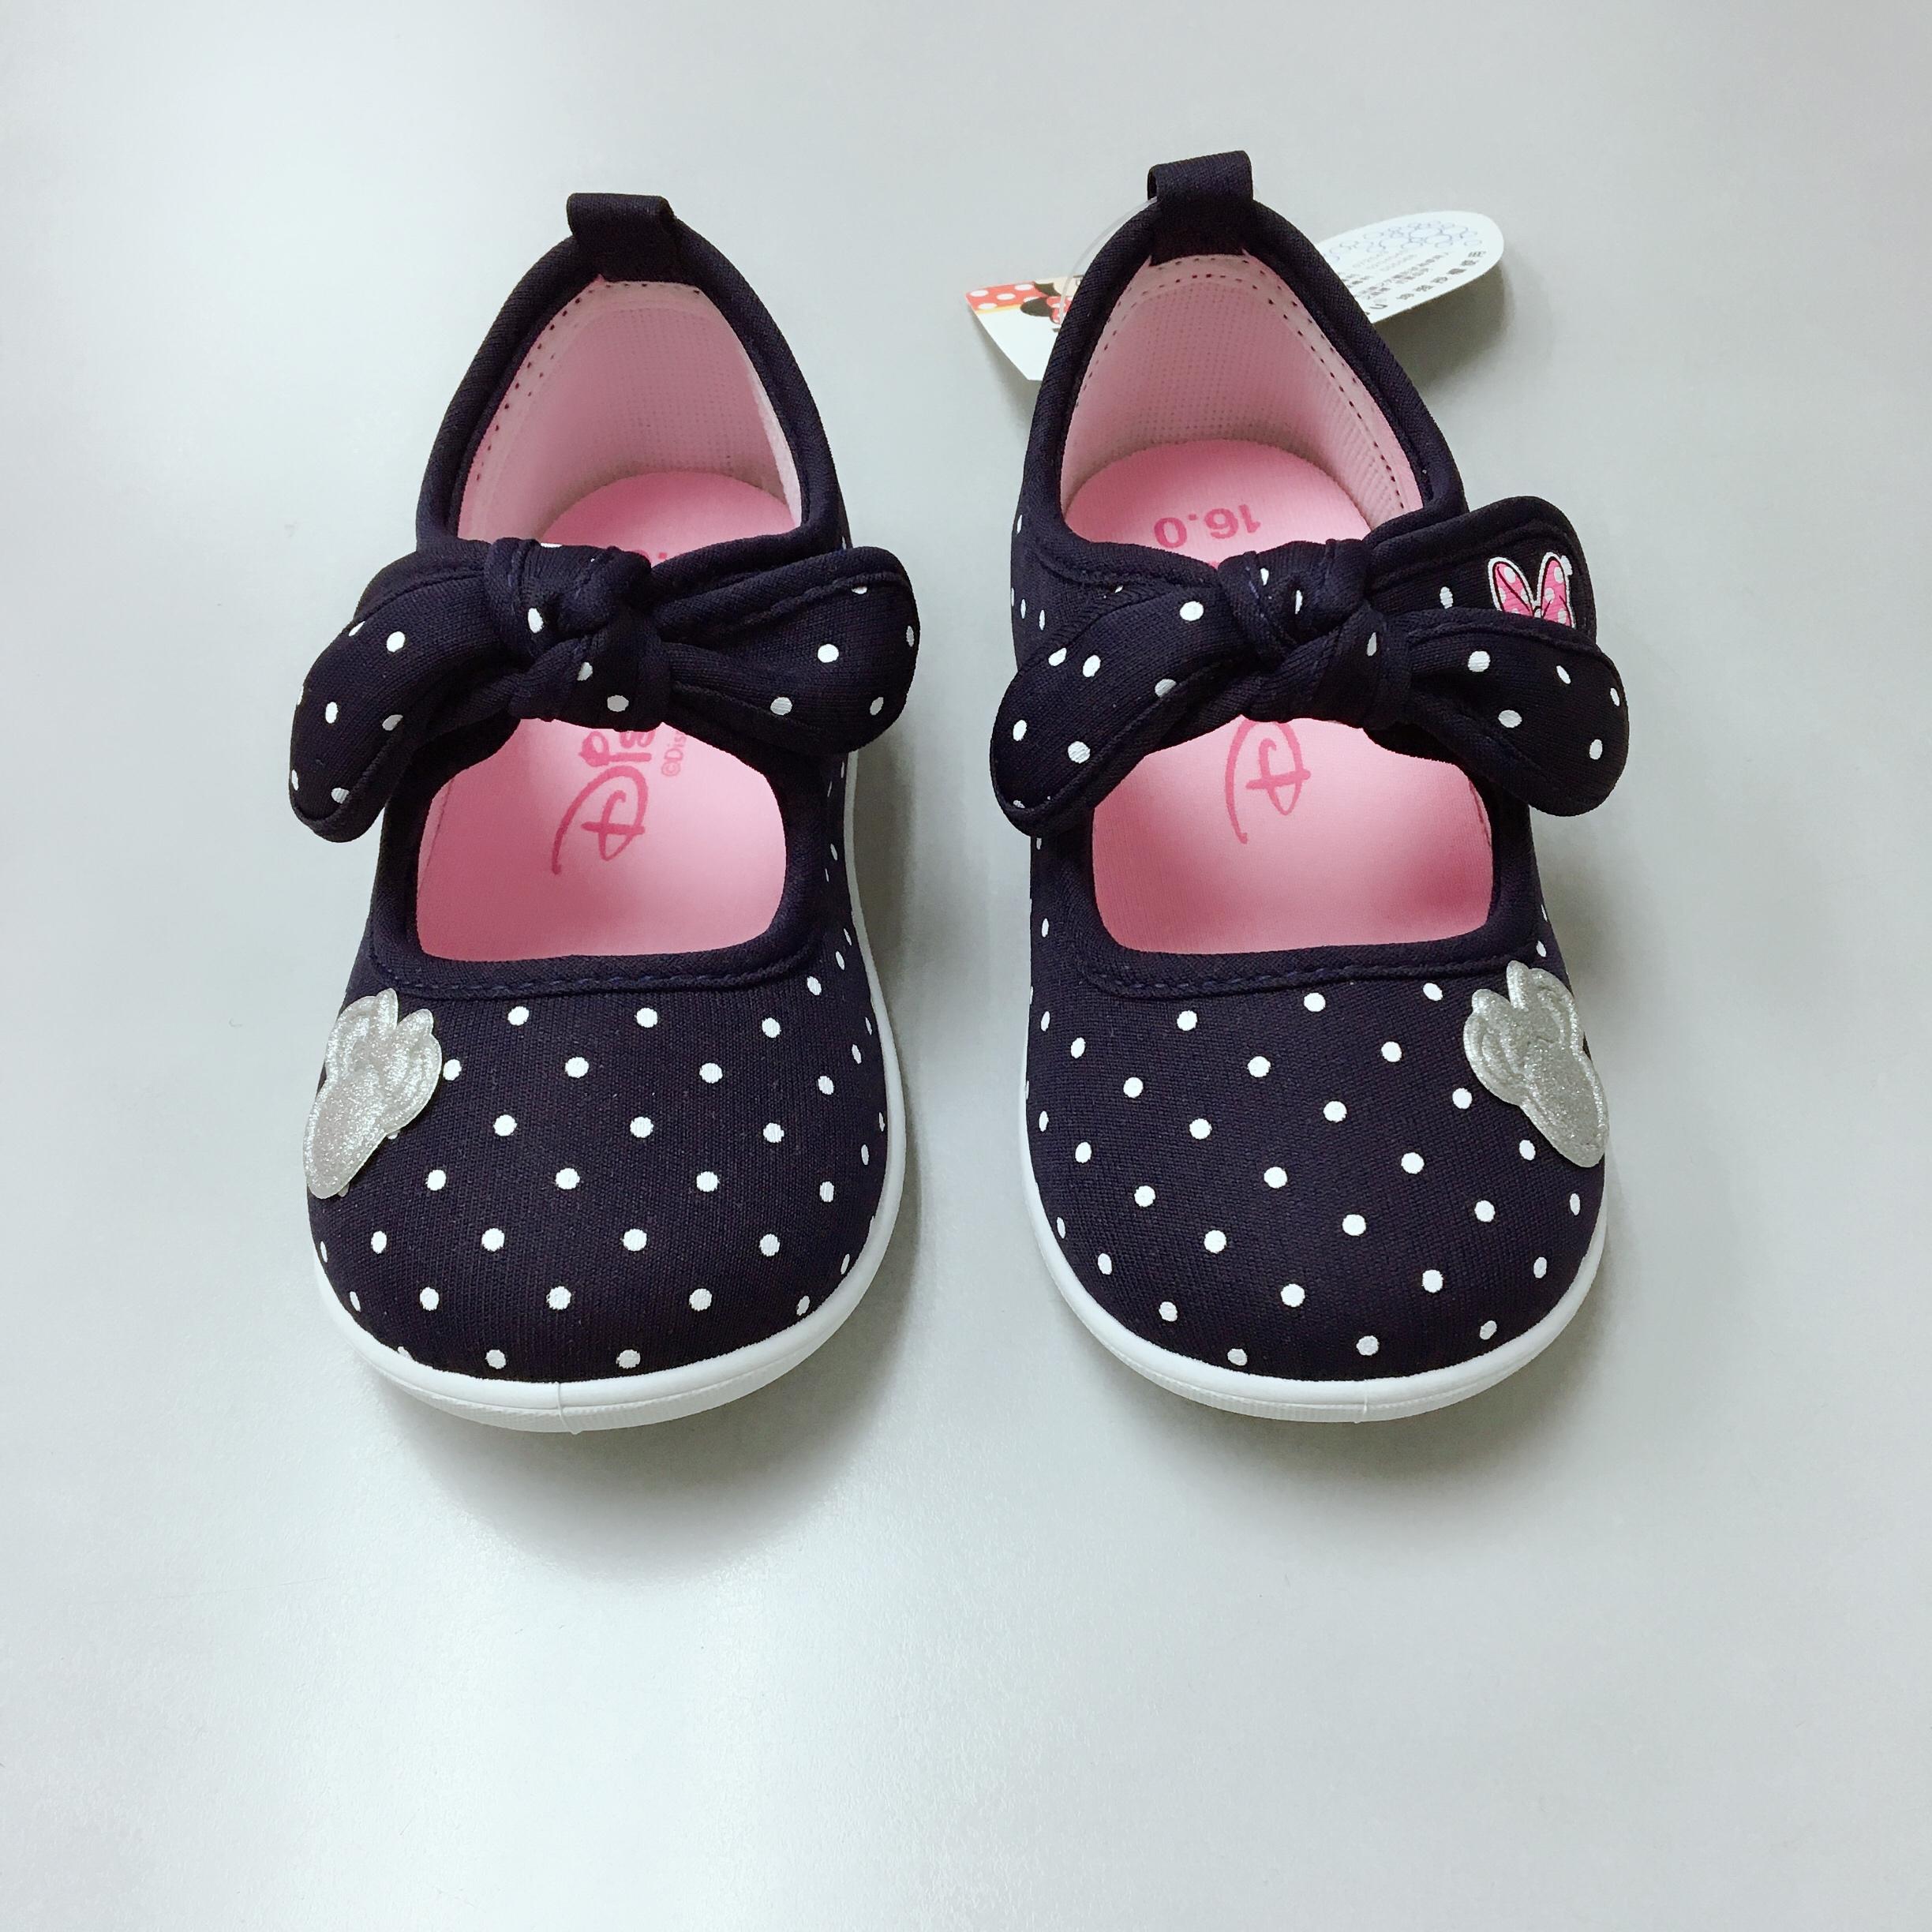 minnie mouse infant shoes